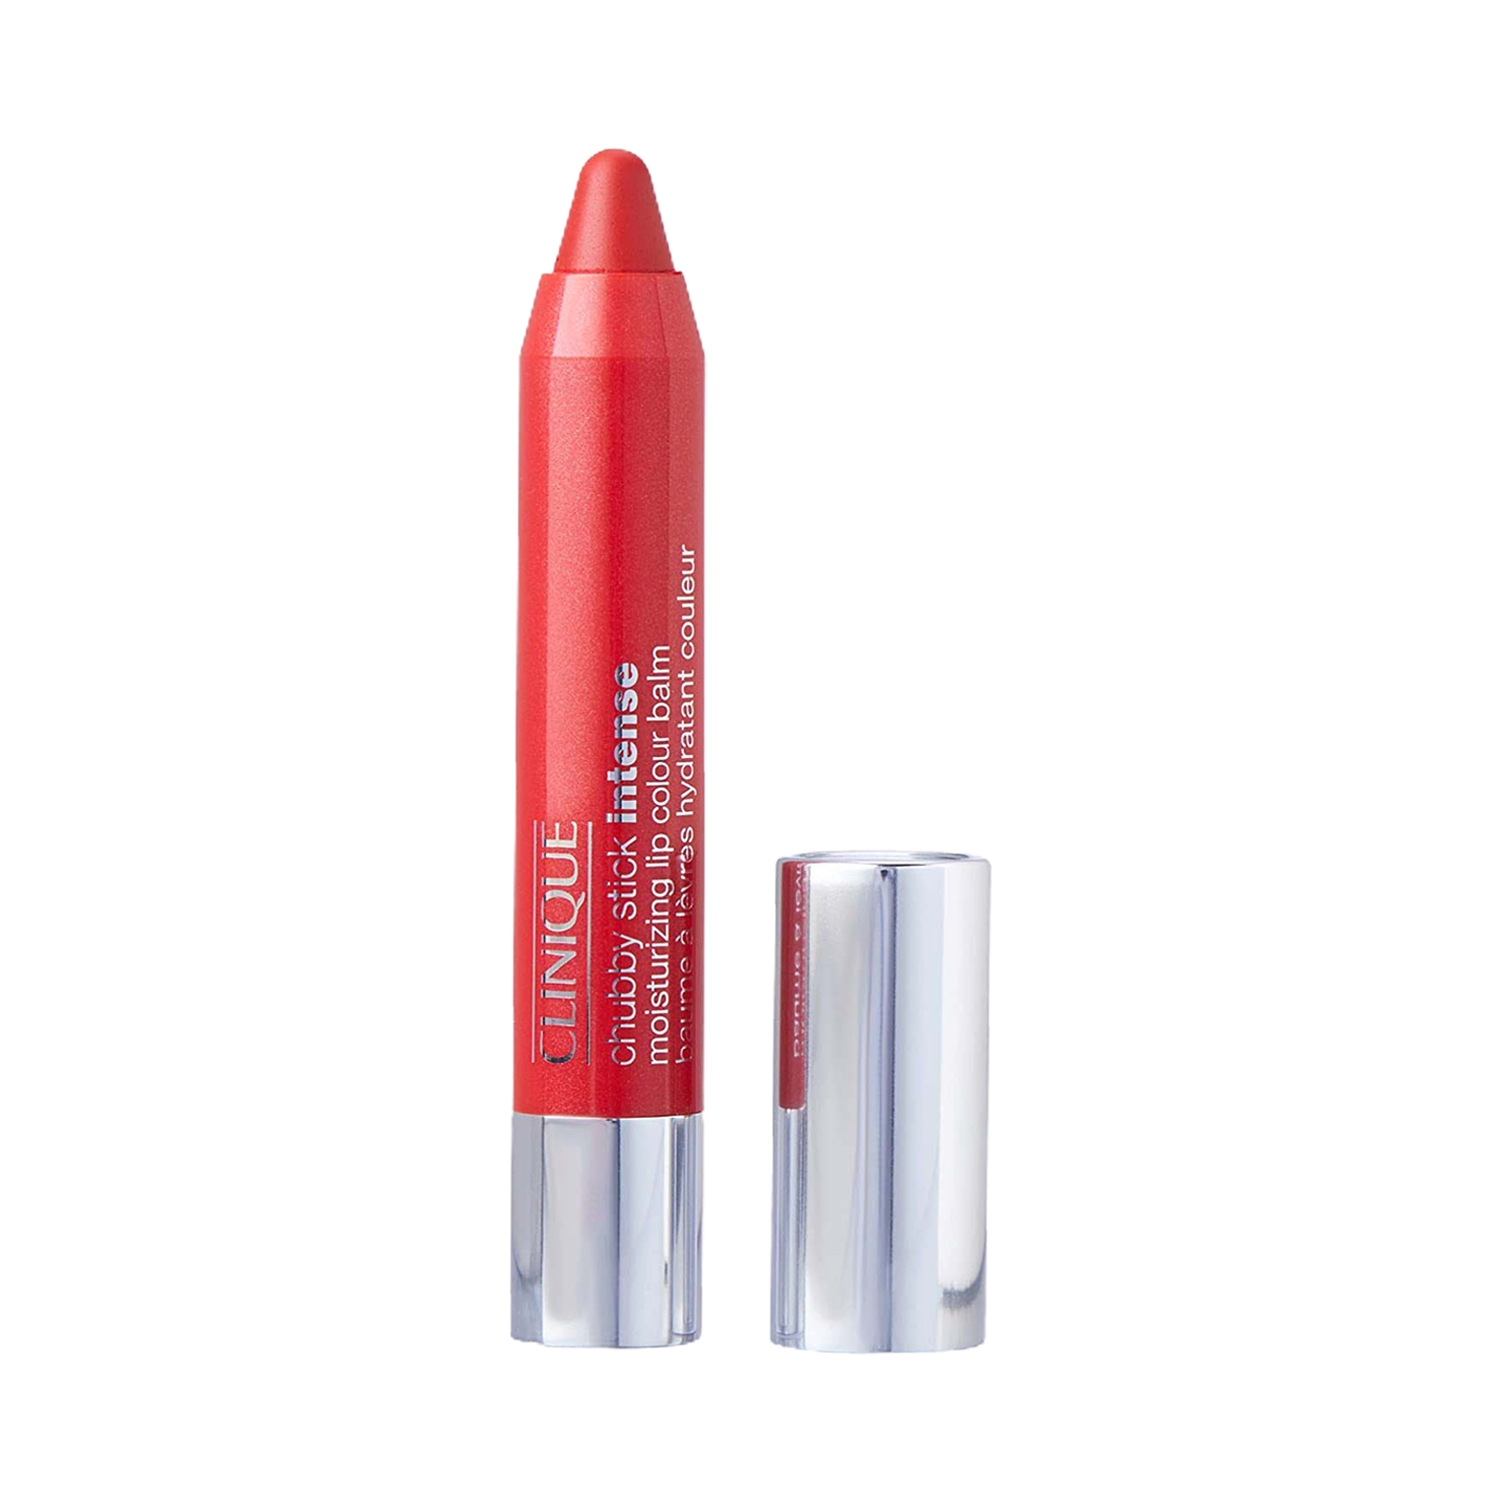 CLINIQUE | CLINIQUE Chubby Stick Intense Moisturizing Lip Colour Balm - Heftiest Hibiscus (3g)